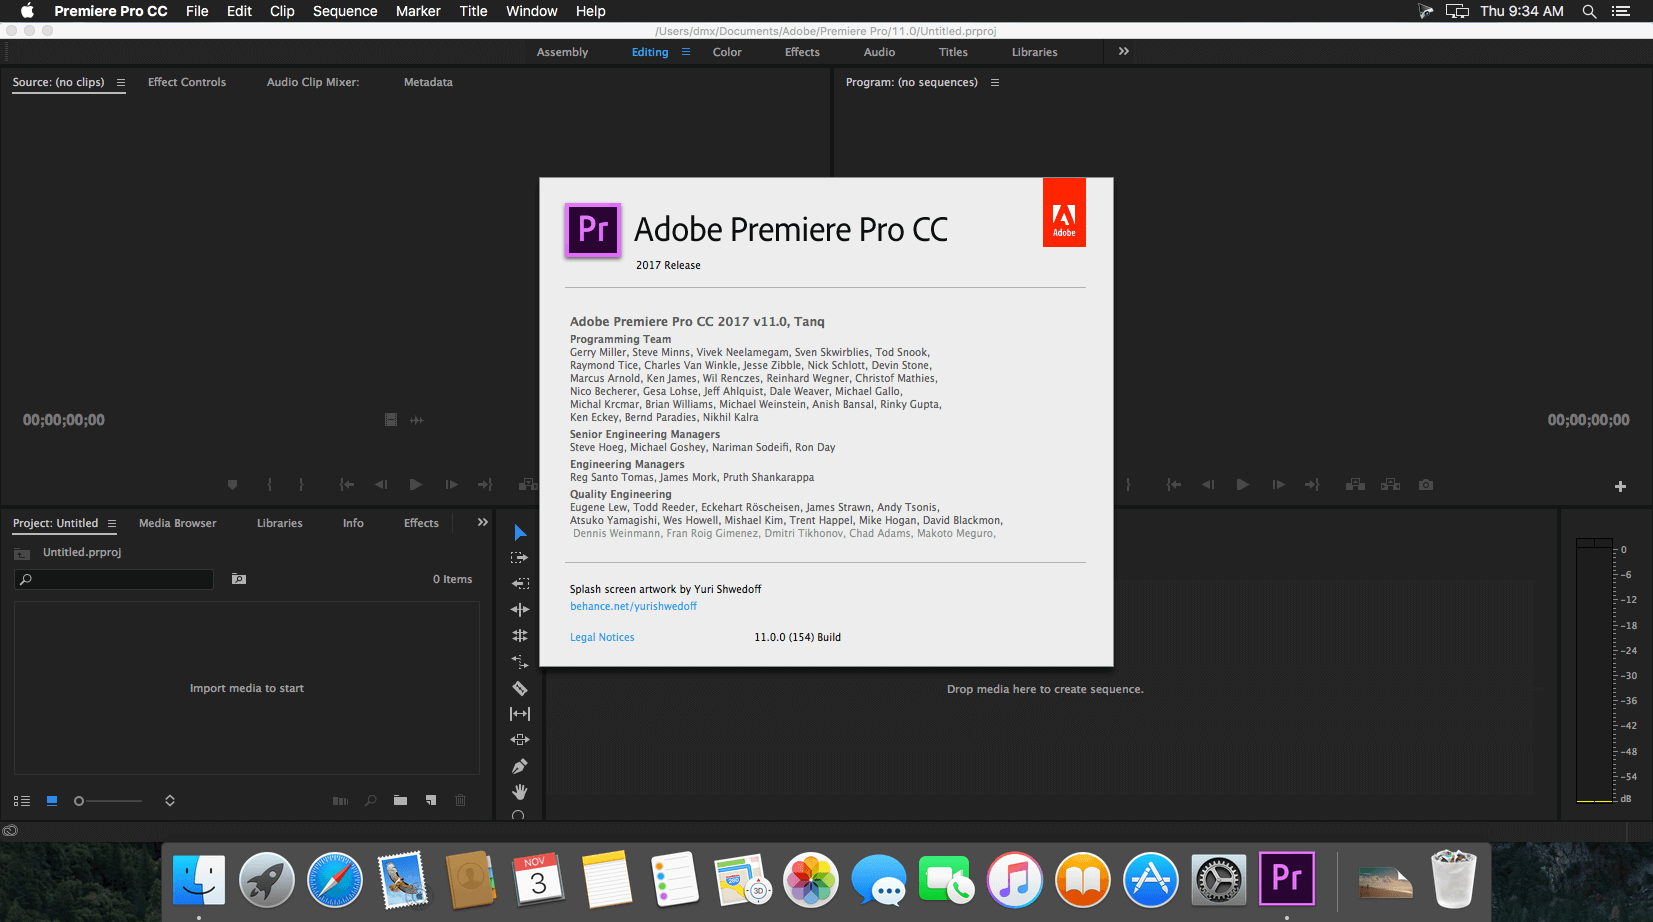 Adobe premiere pro cc 2017 download